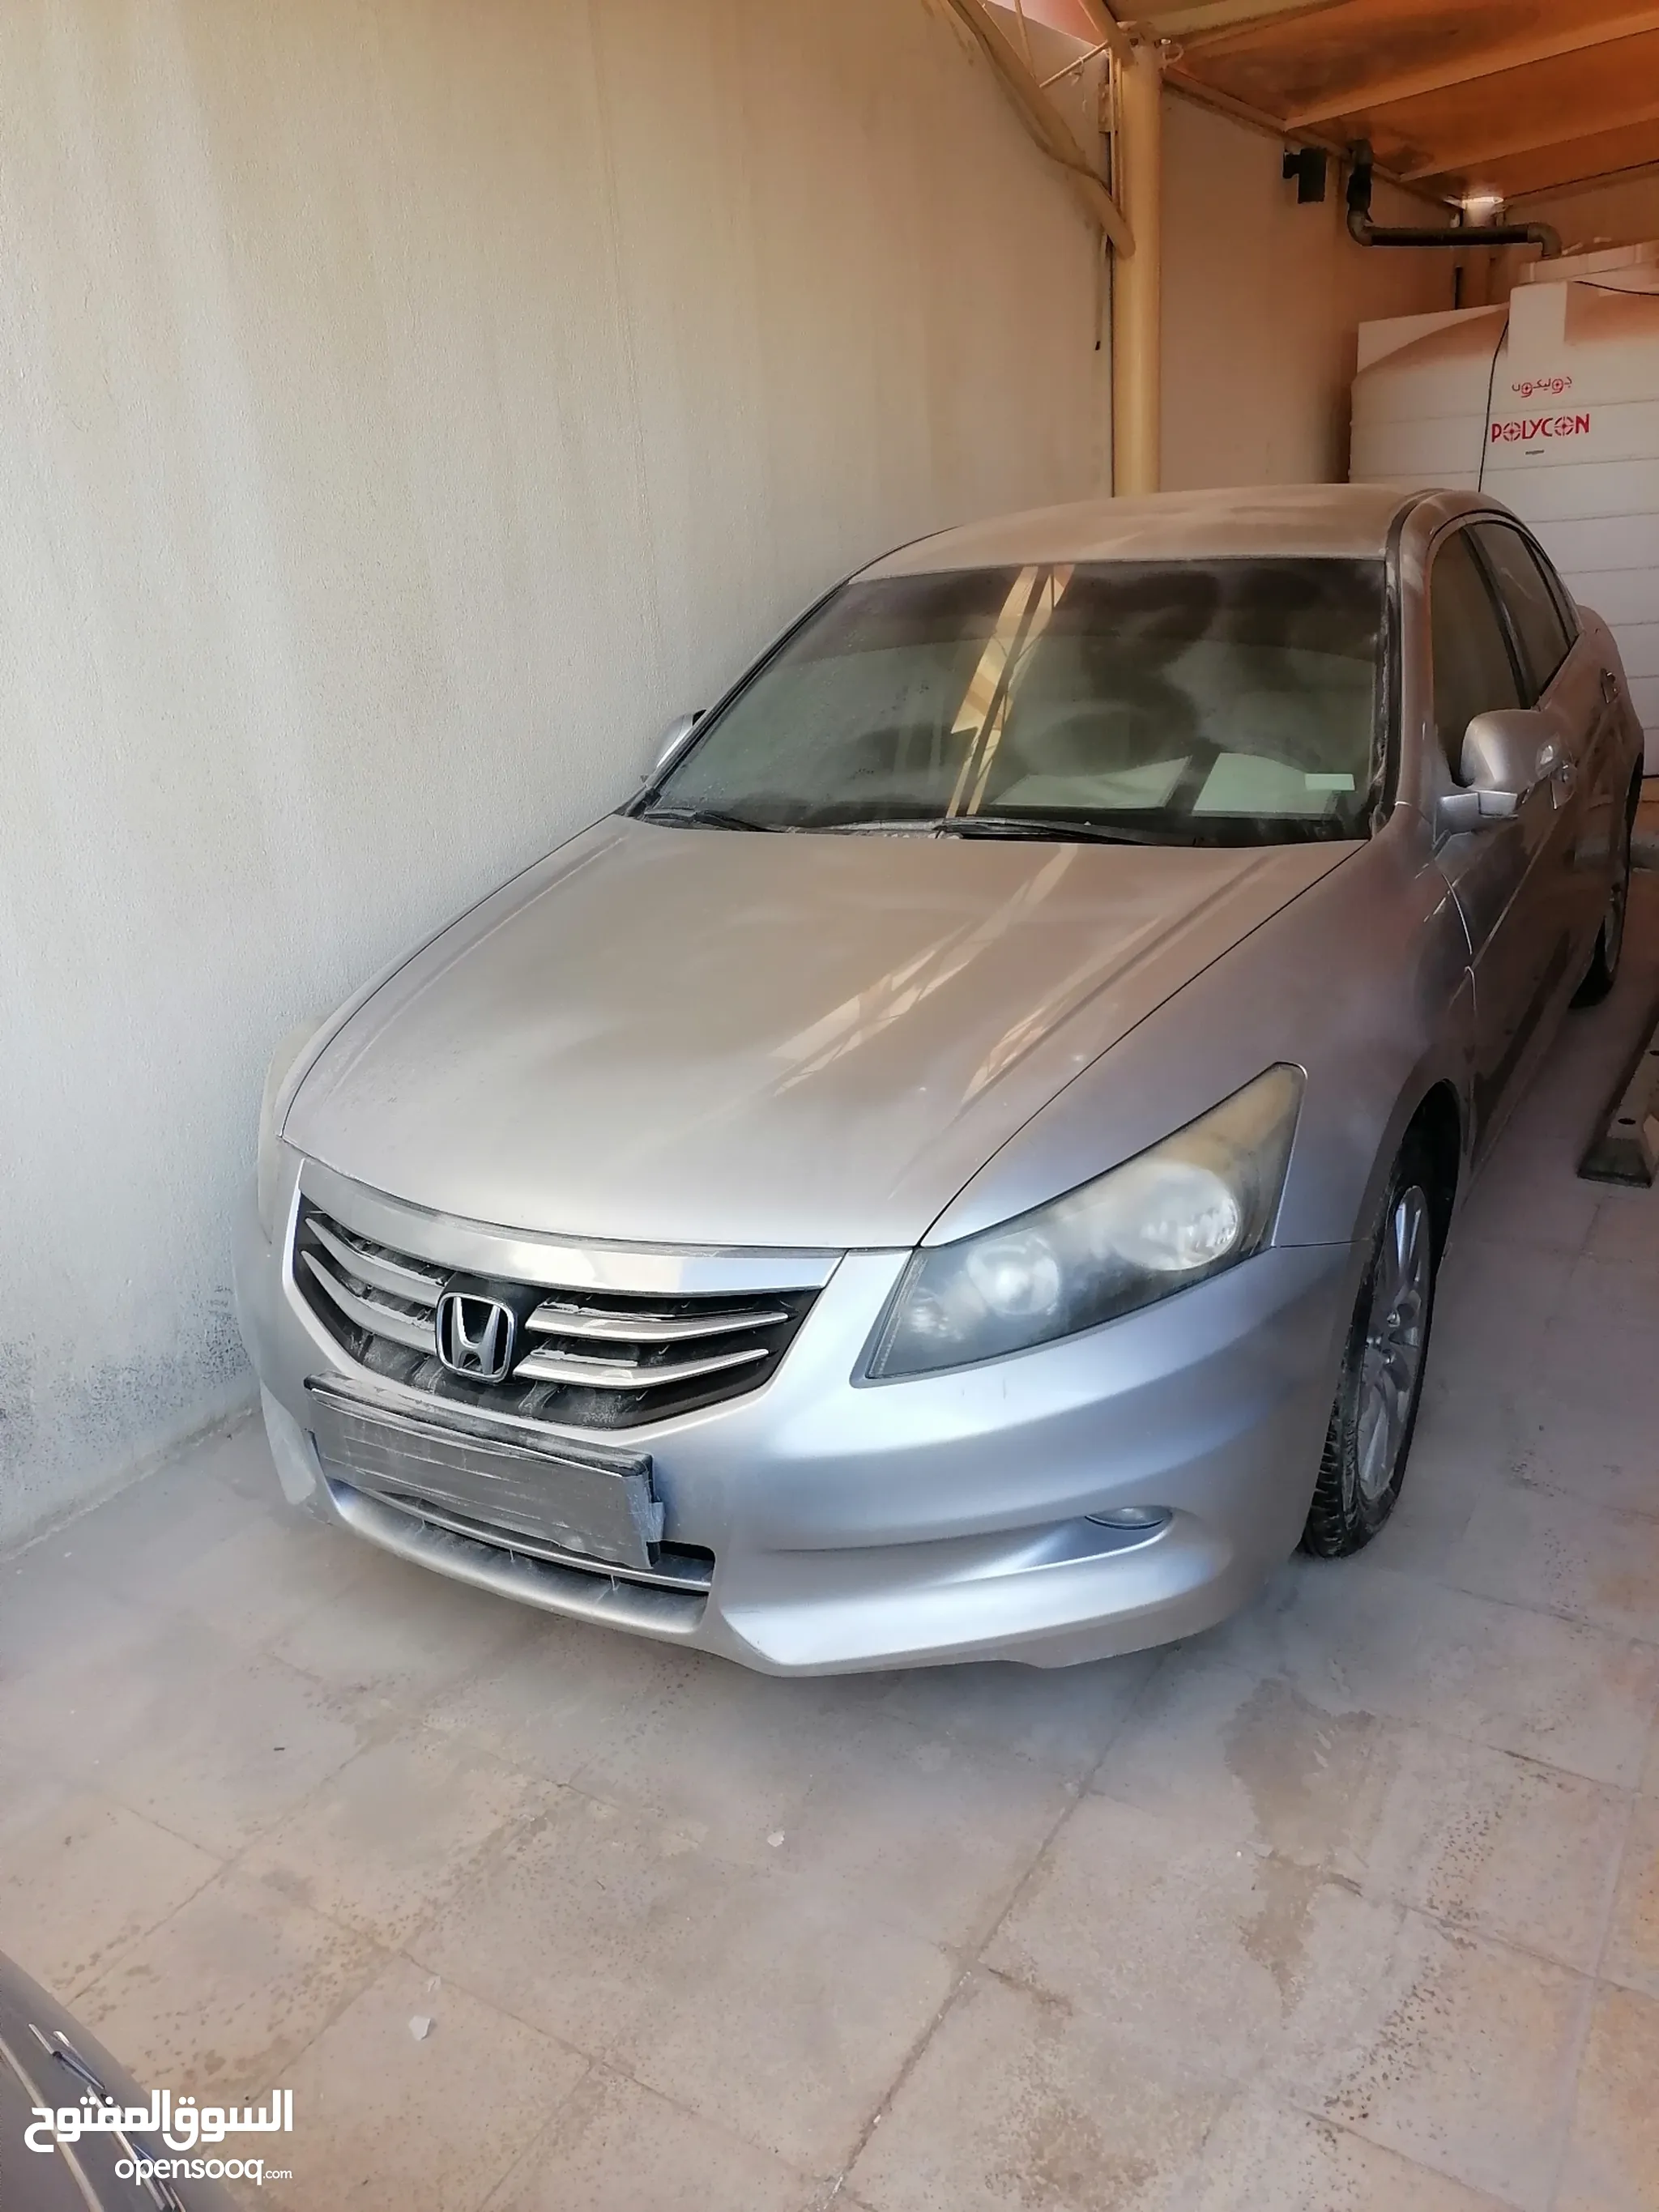 سكراب سيارات : سيارات مصدومه : سكراب لكزس ونيسان : أرخص الأسعار في أبو ظبي  | السوق المفتوح